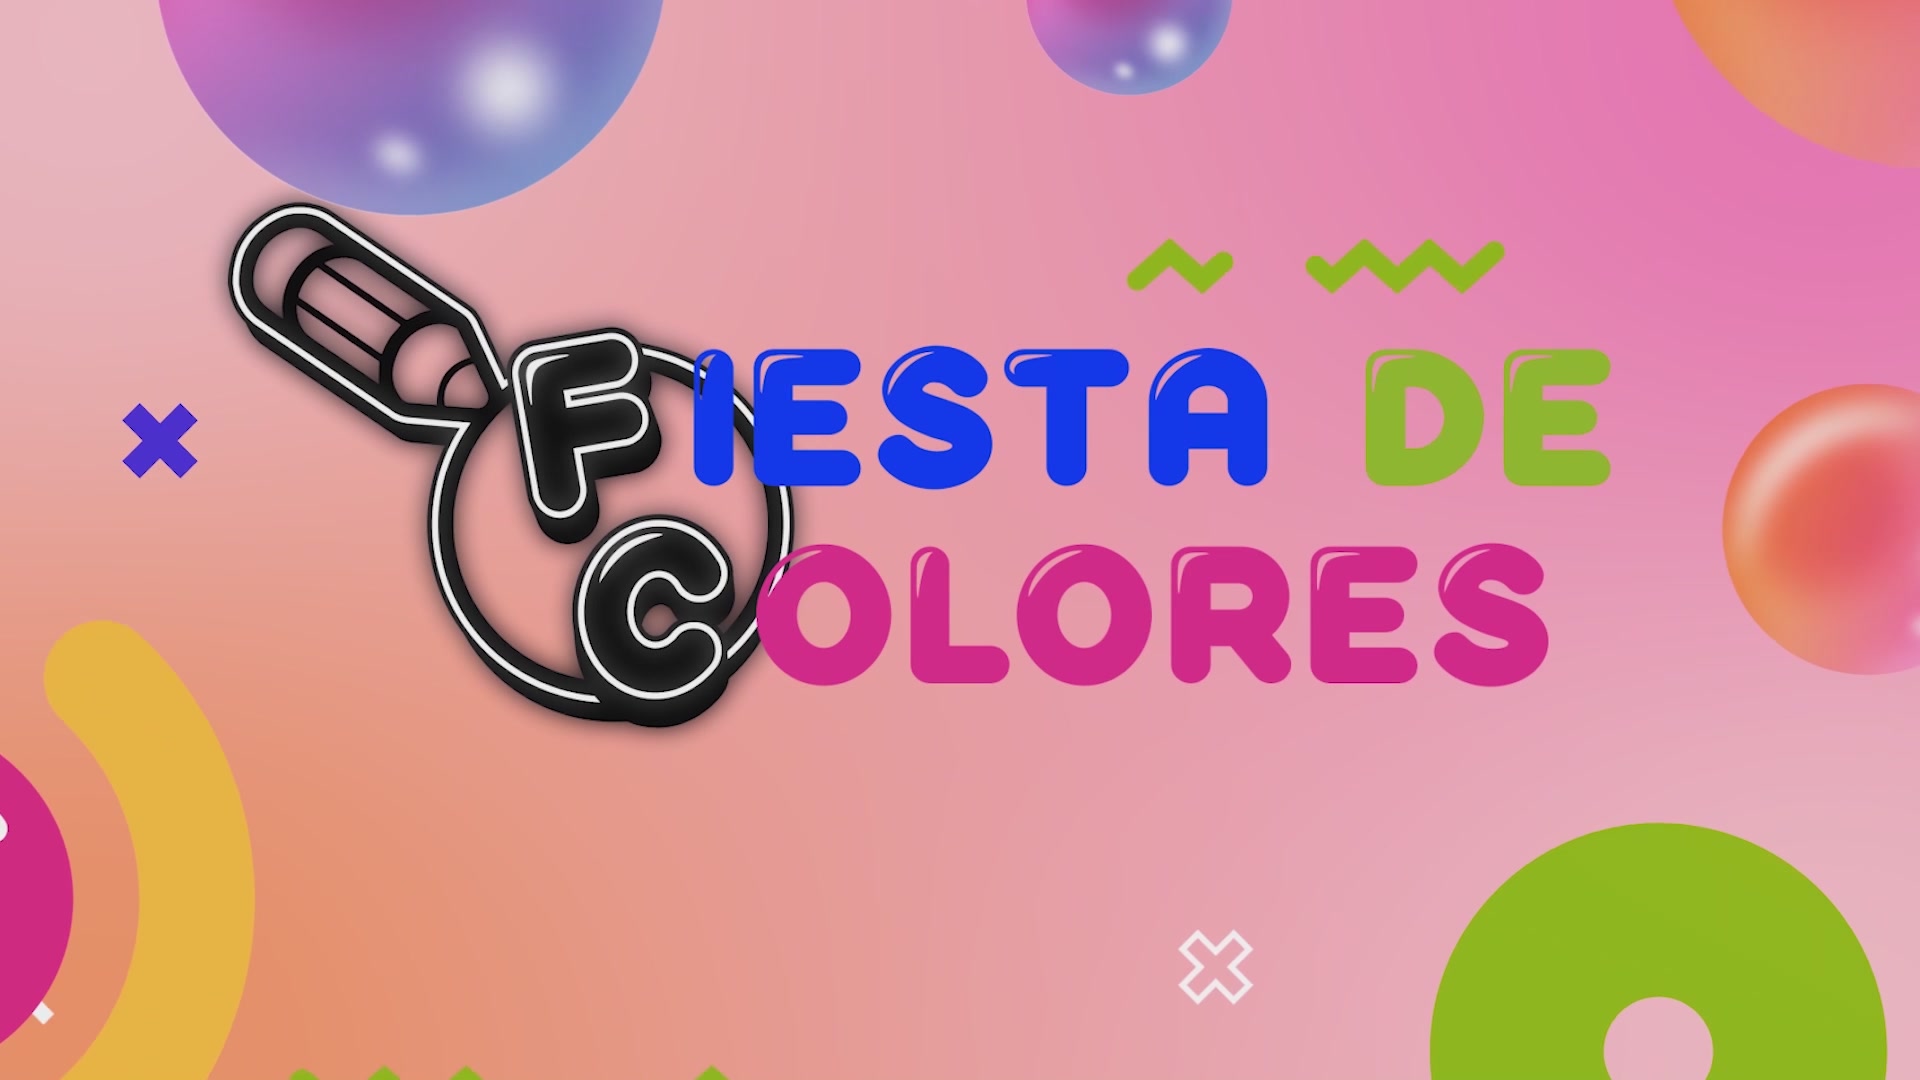 Fiesta de Colores: Fidel